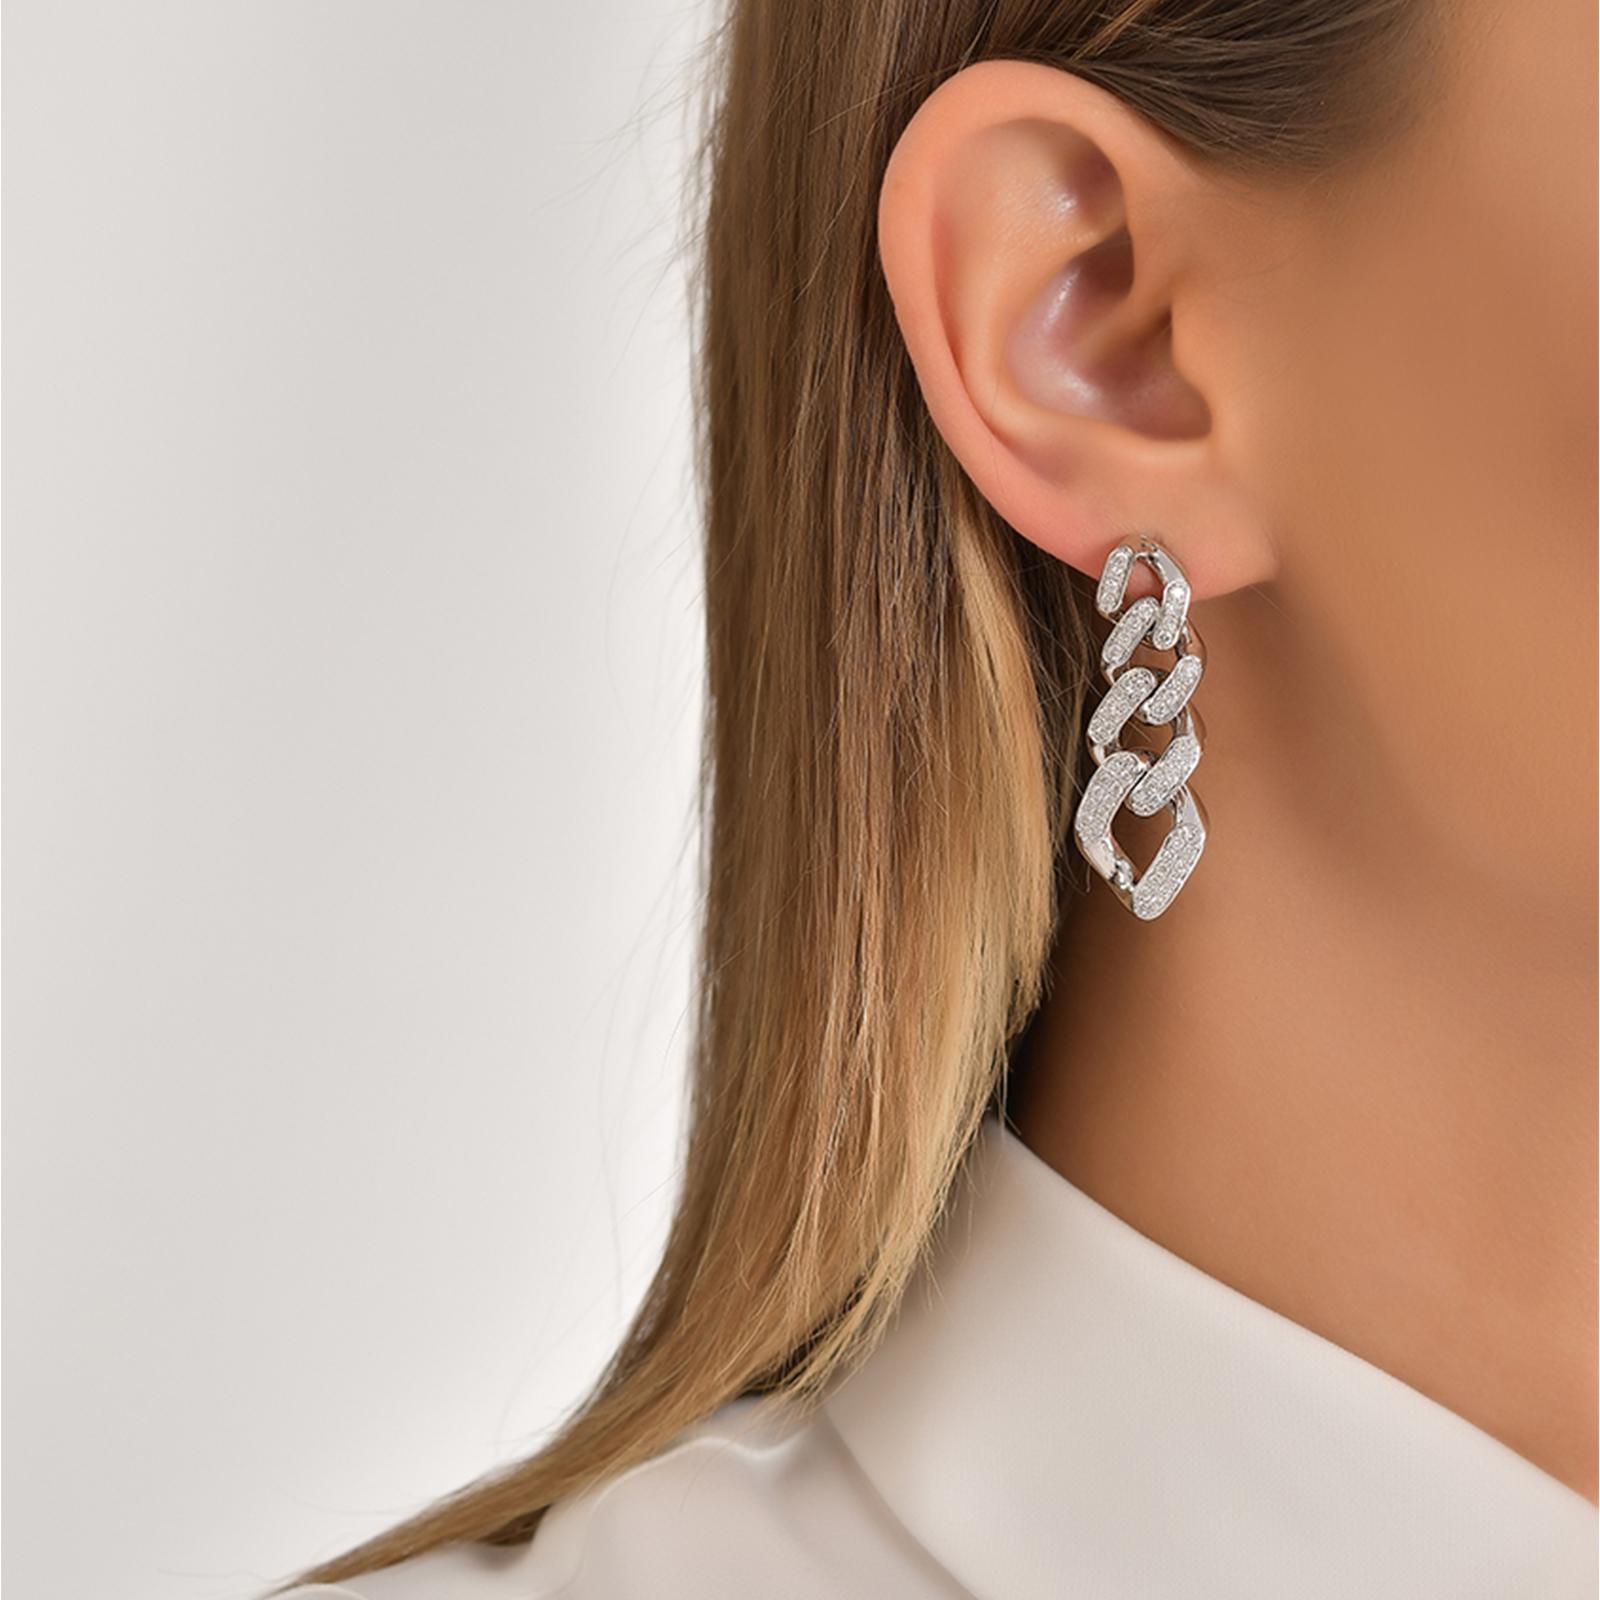 cuban earrings